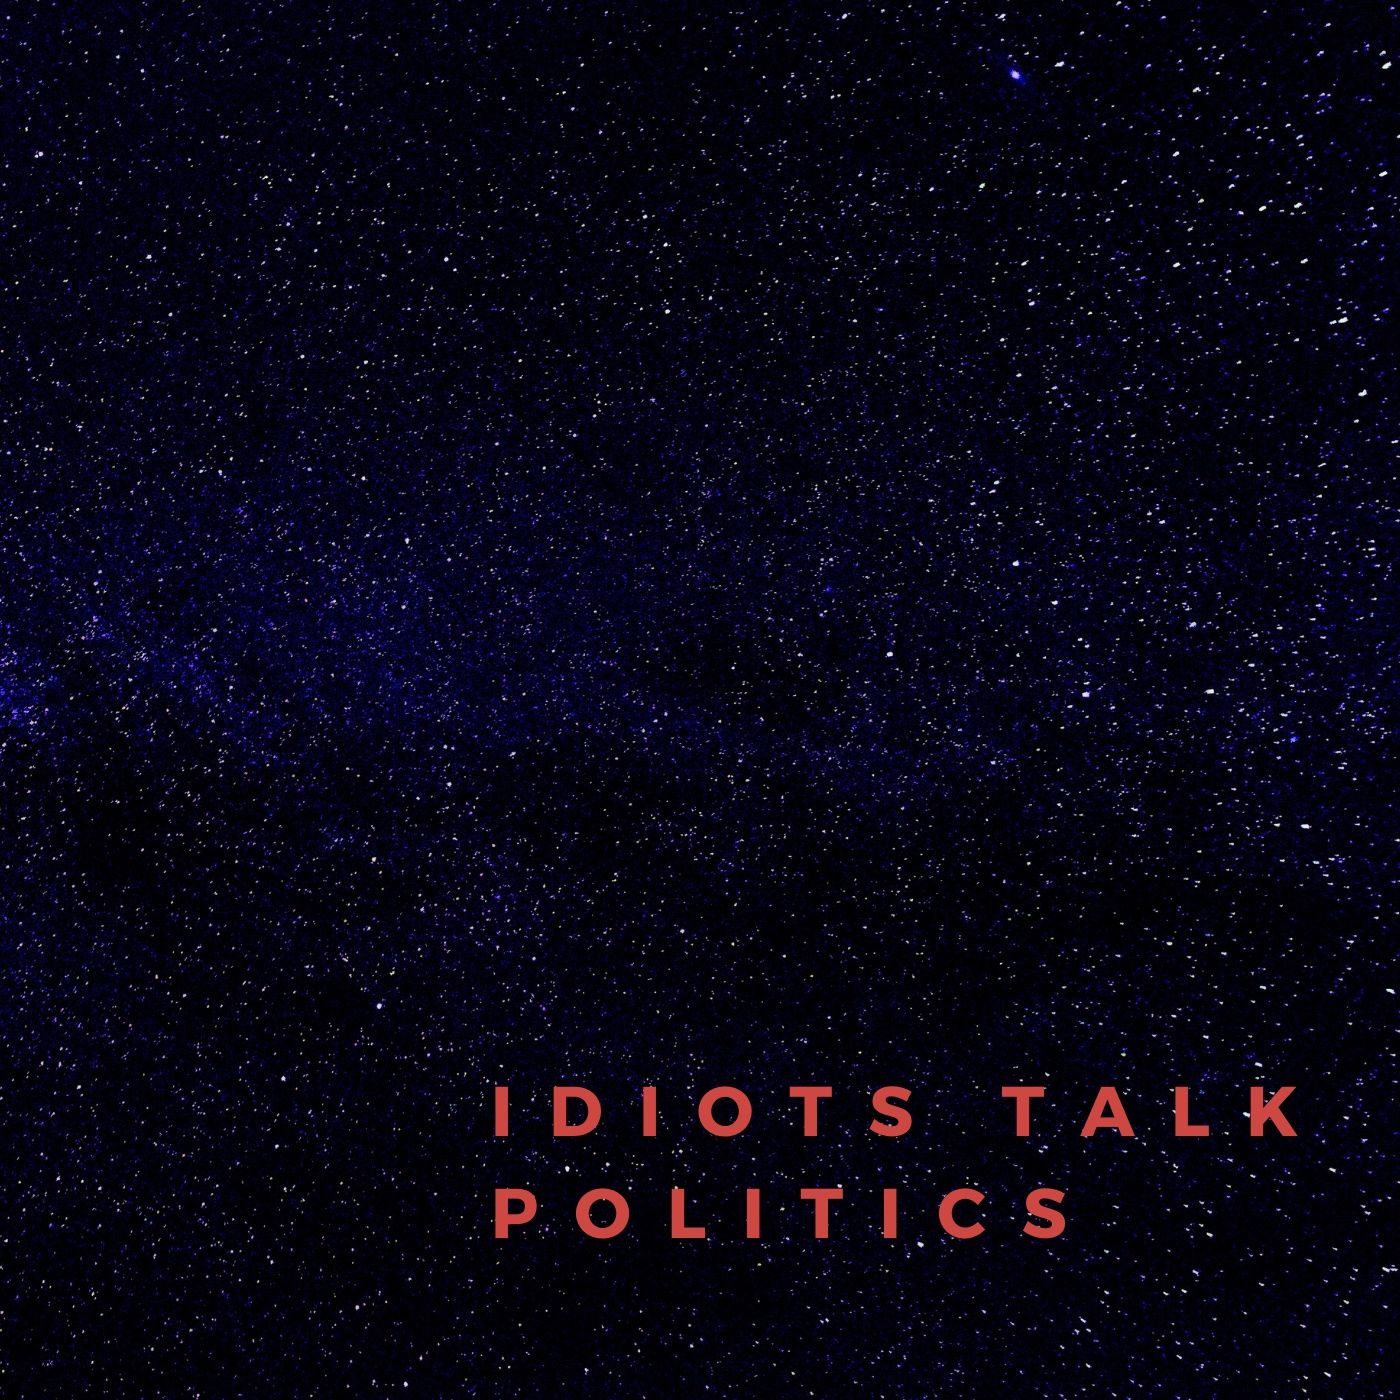 Episode 2 - Idiots Talk Politics